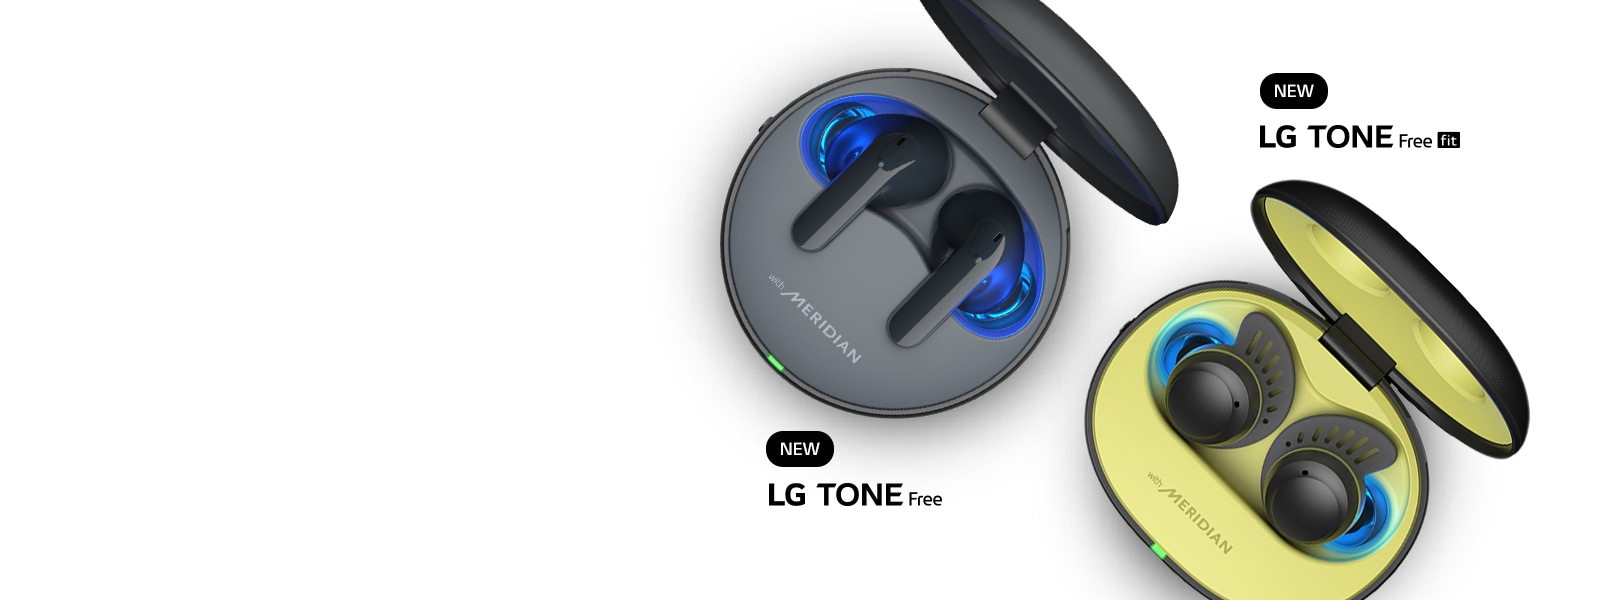 Una vista aérea de los audífonos LG TONE Free Fit y TONE Free T90 dentro de su estuche contra un fondo blanco. Aparecen las palabras “Nuevo LG TONE Free Fit” y “Nuevo LG TONE Free”.